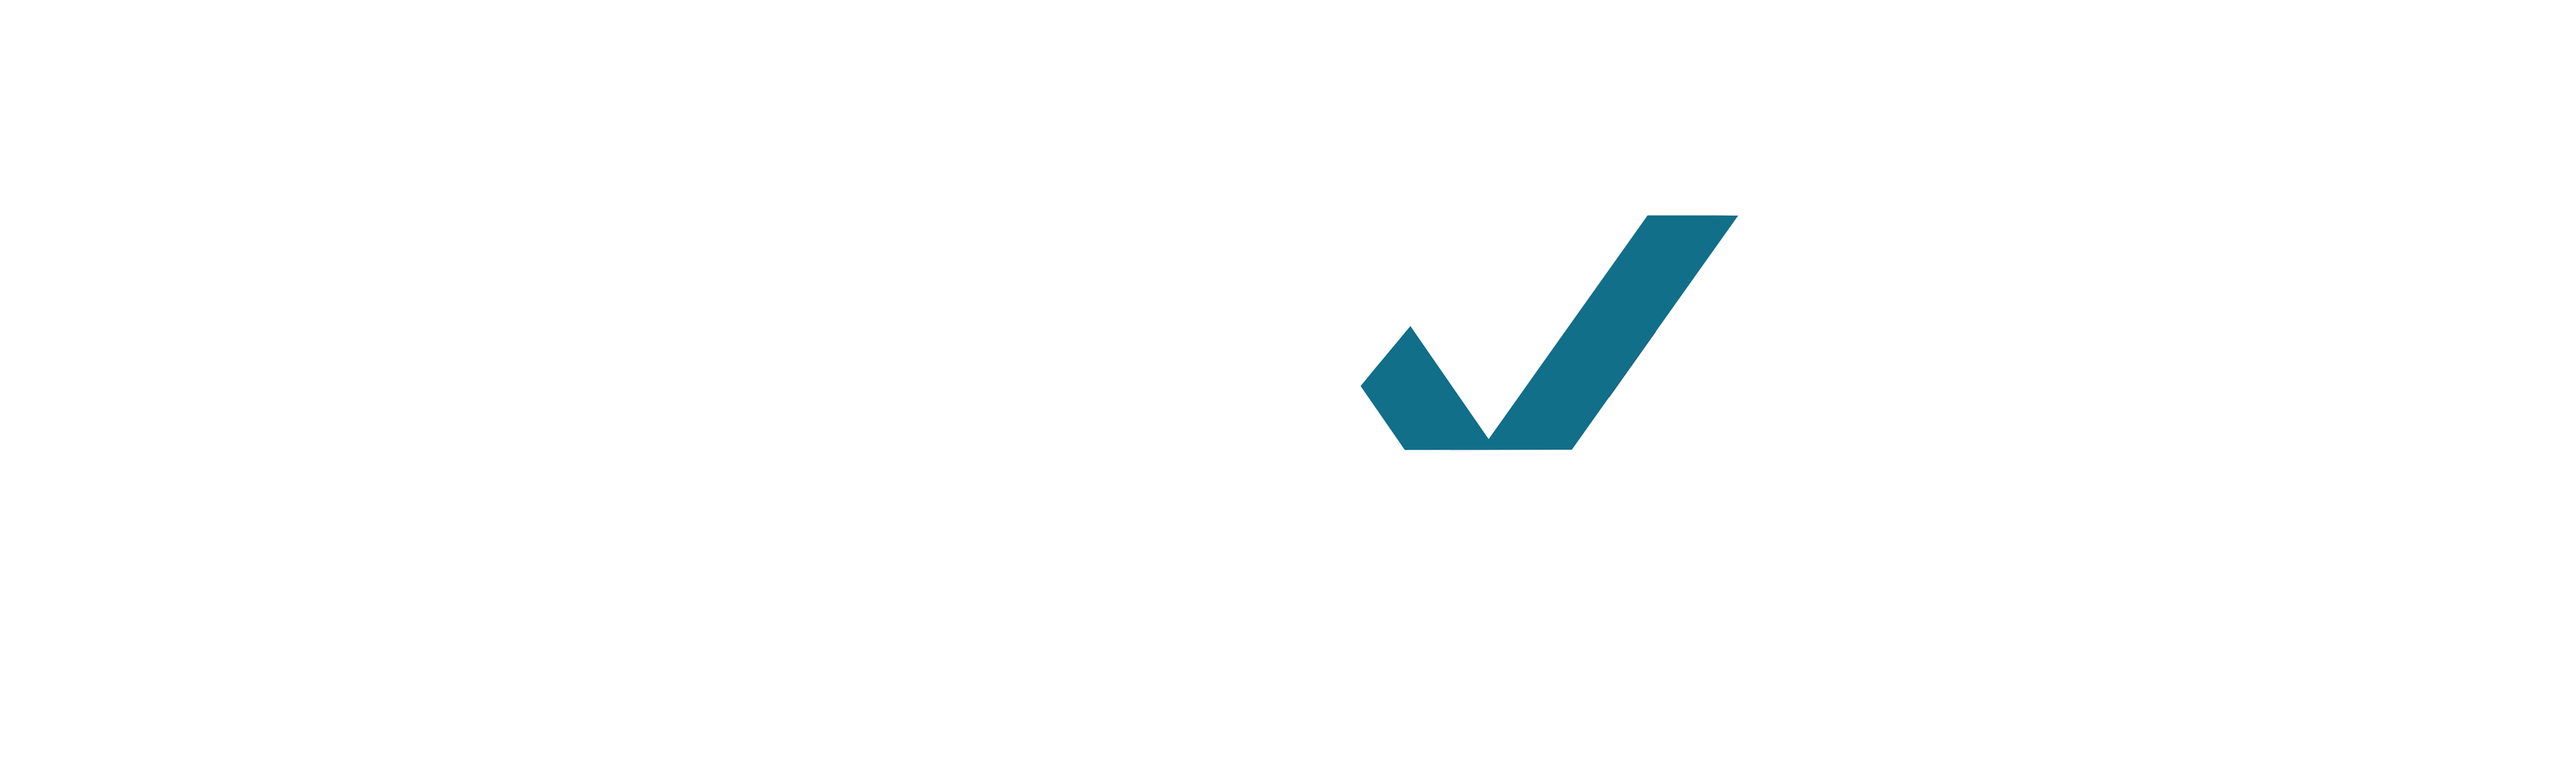 Tekx Studio